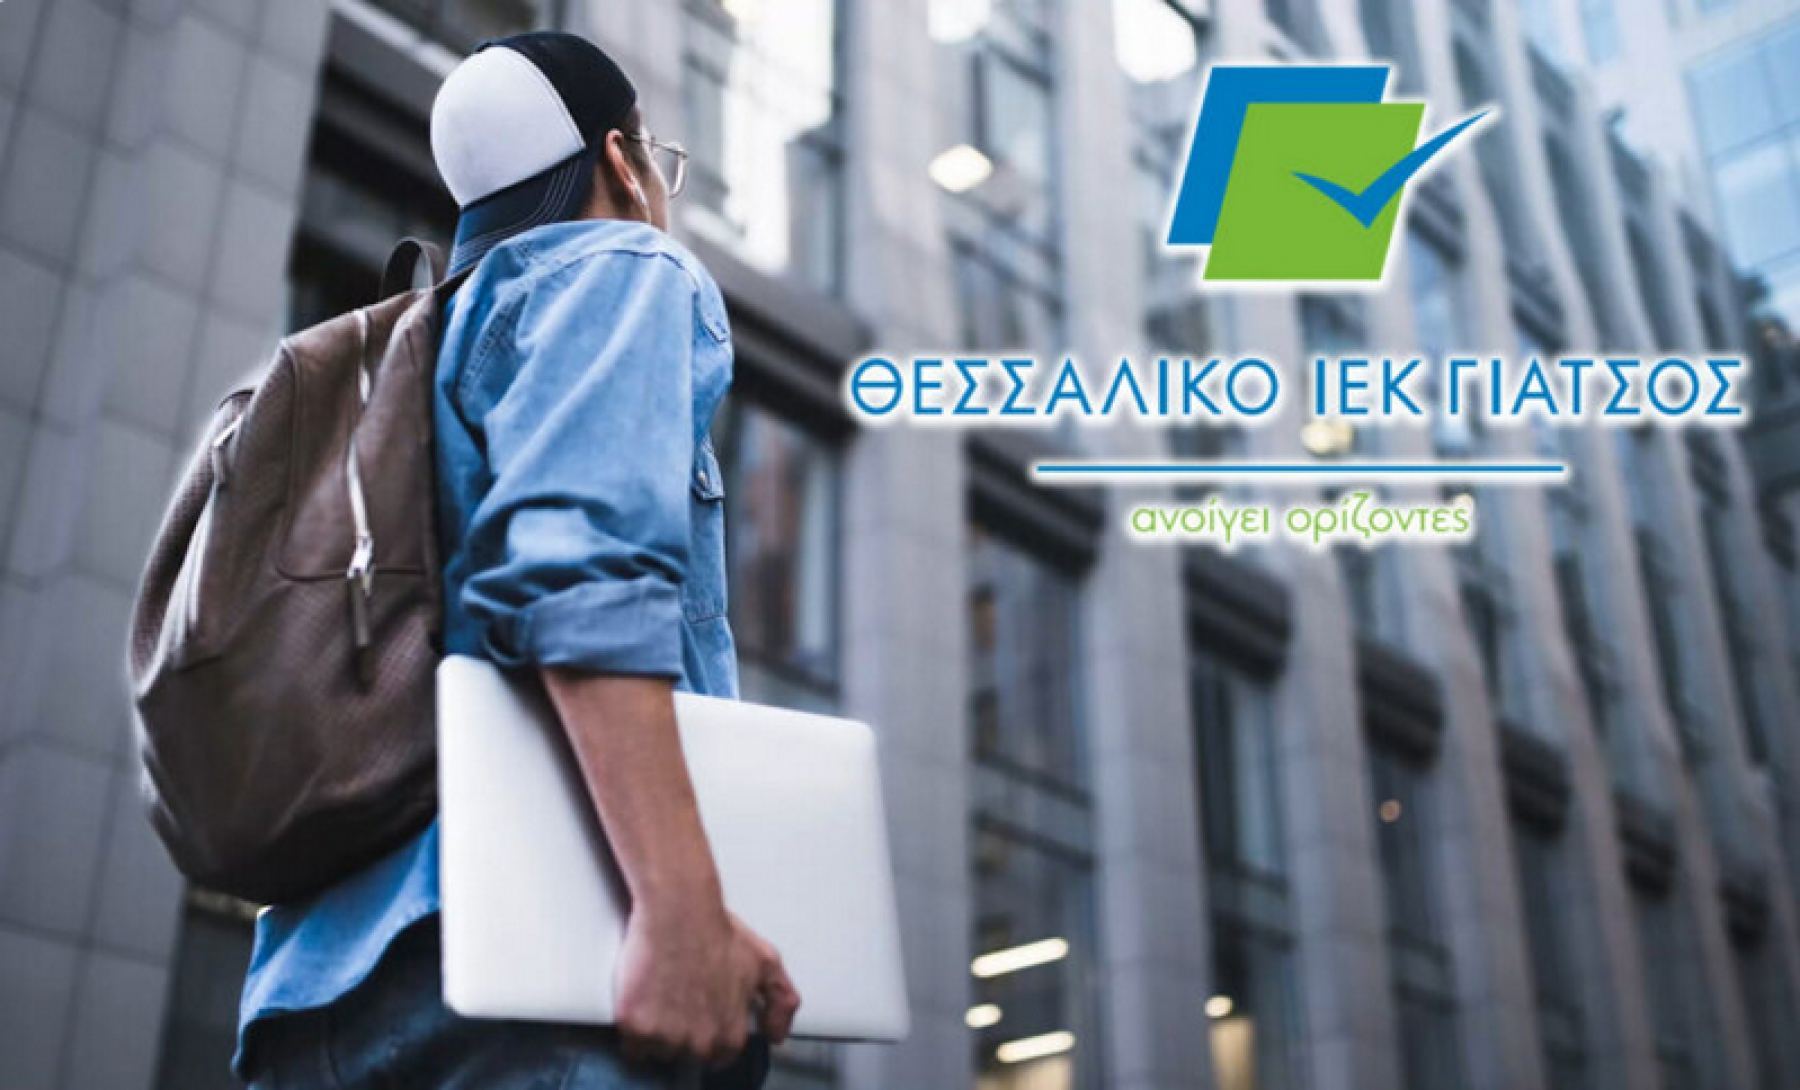 Λαμία: Εγγραφές και Νέες Ειδικότητες για σπουδαστές στο «Θεσσαλικό ΙΕΚ Γιάτσος»